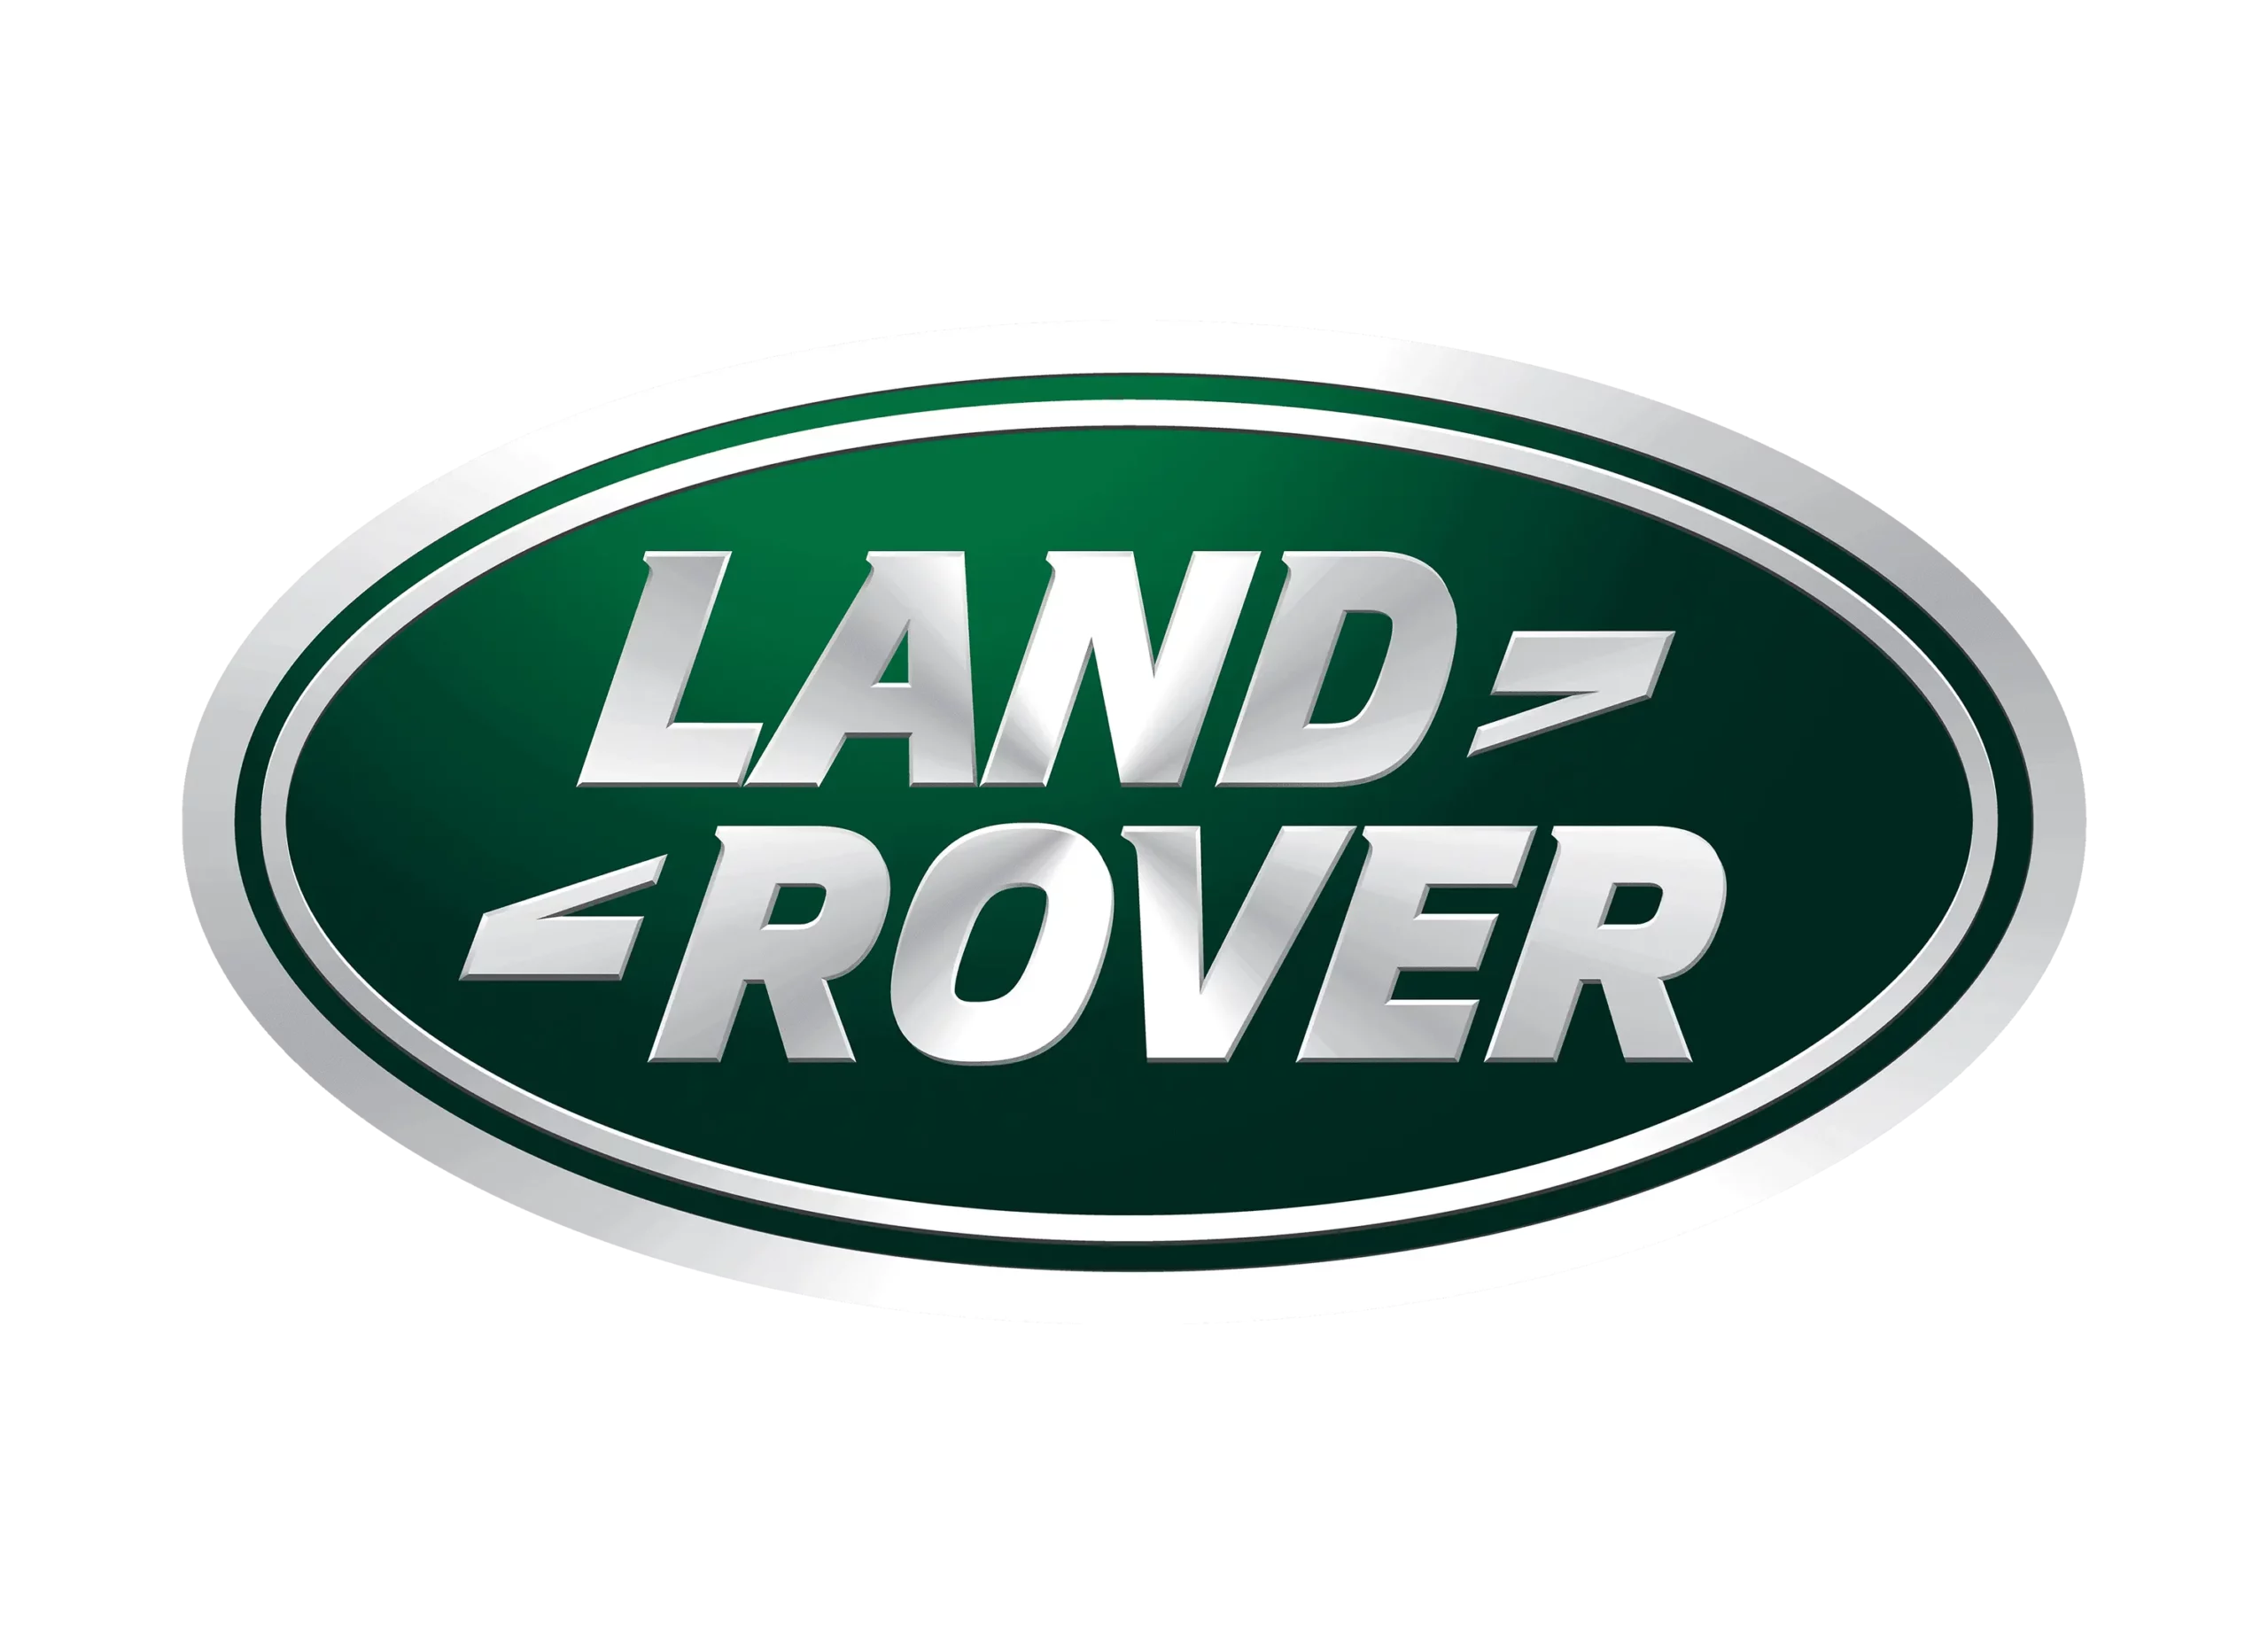 Land Rover logo 1986-present